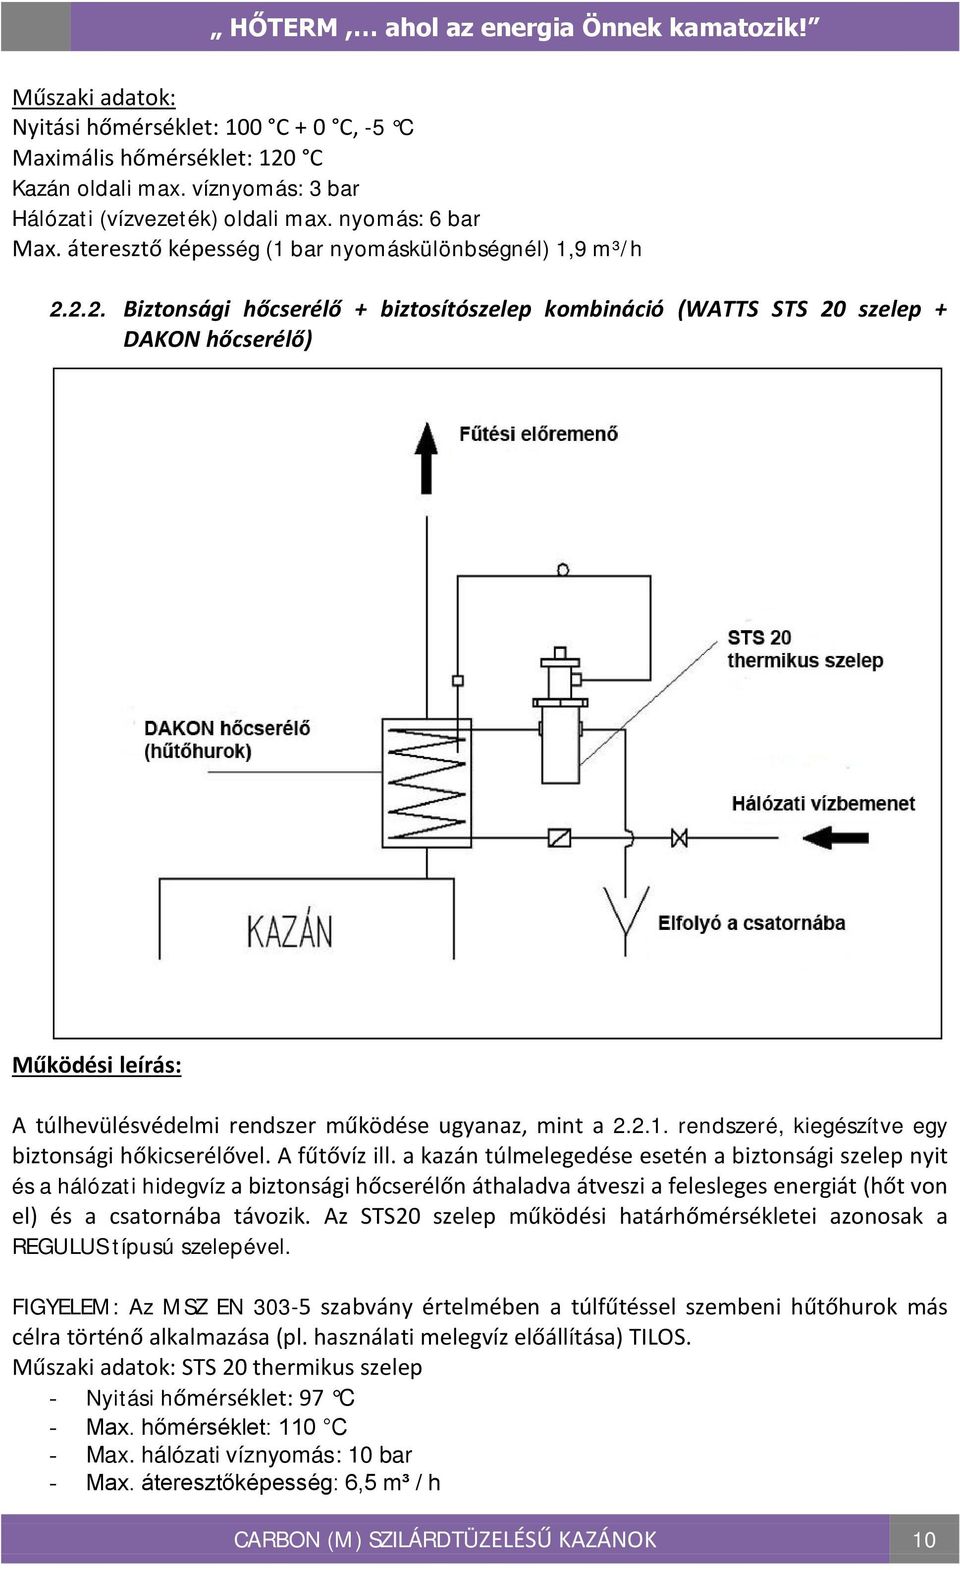 2.2. Biztonsági hőcserélő + biztosítószelep kombináció (WATTS STS 20 szelep + DAKON hőcserélő) Működési leírás: A túlhevülésvédelmi rendszer működése ugyanaz, mint a 2.2.1.